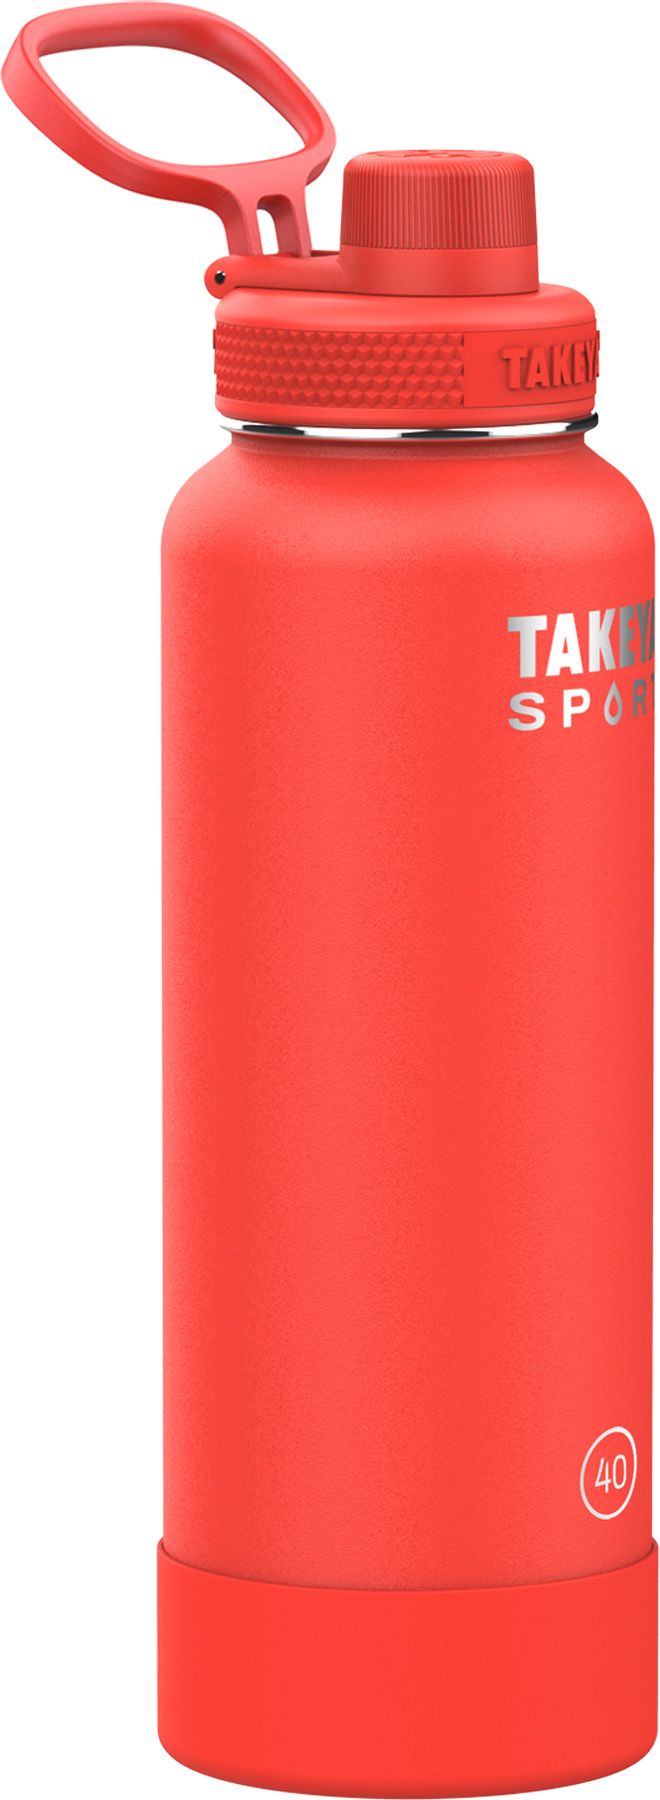 Takeya Sport 40 oz. Water Bottle with Spout Lid